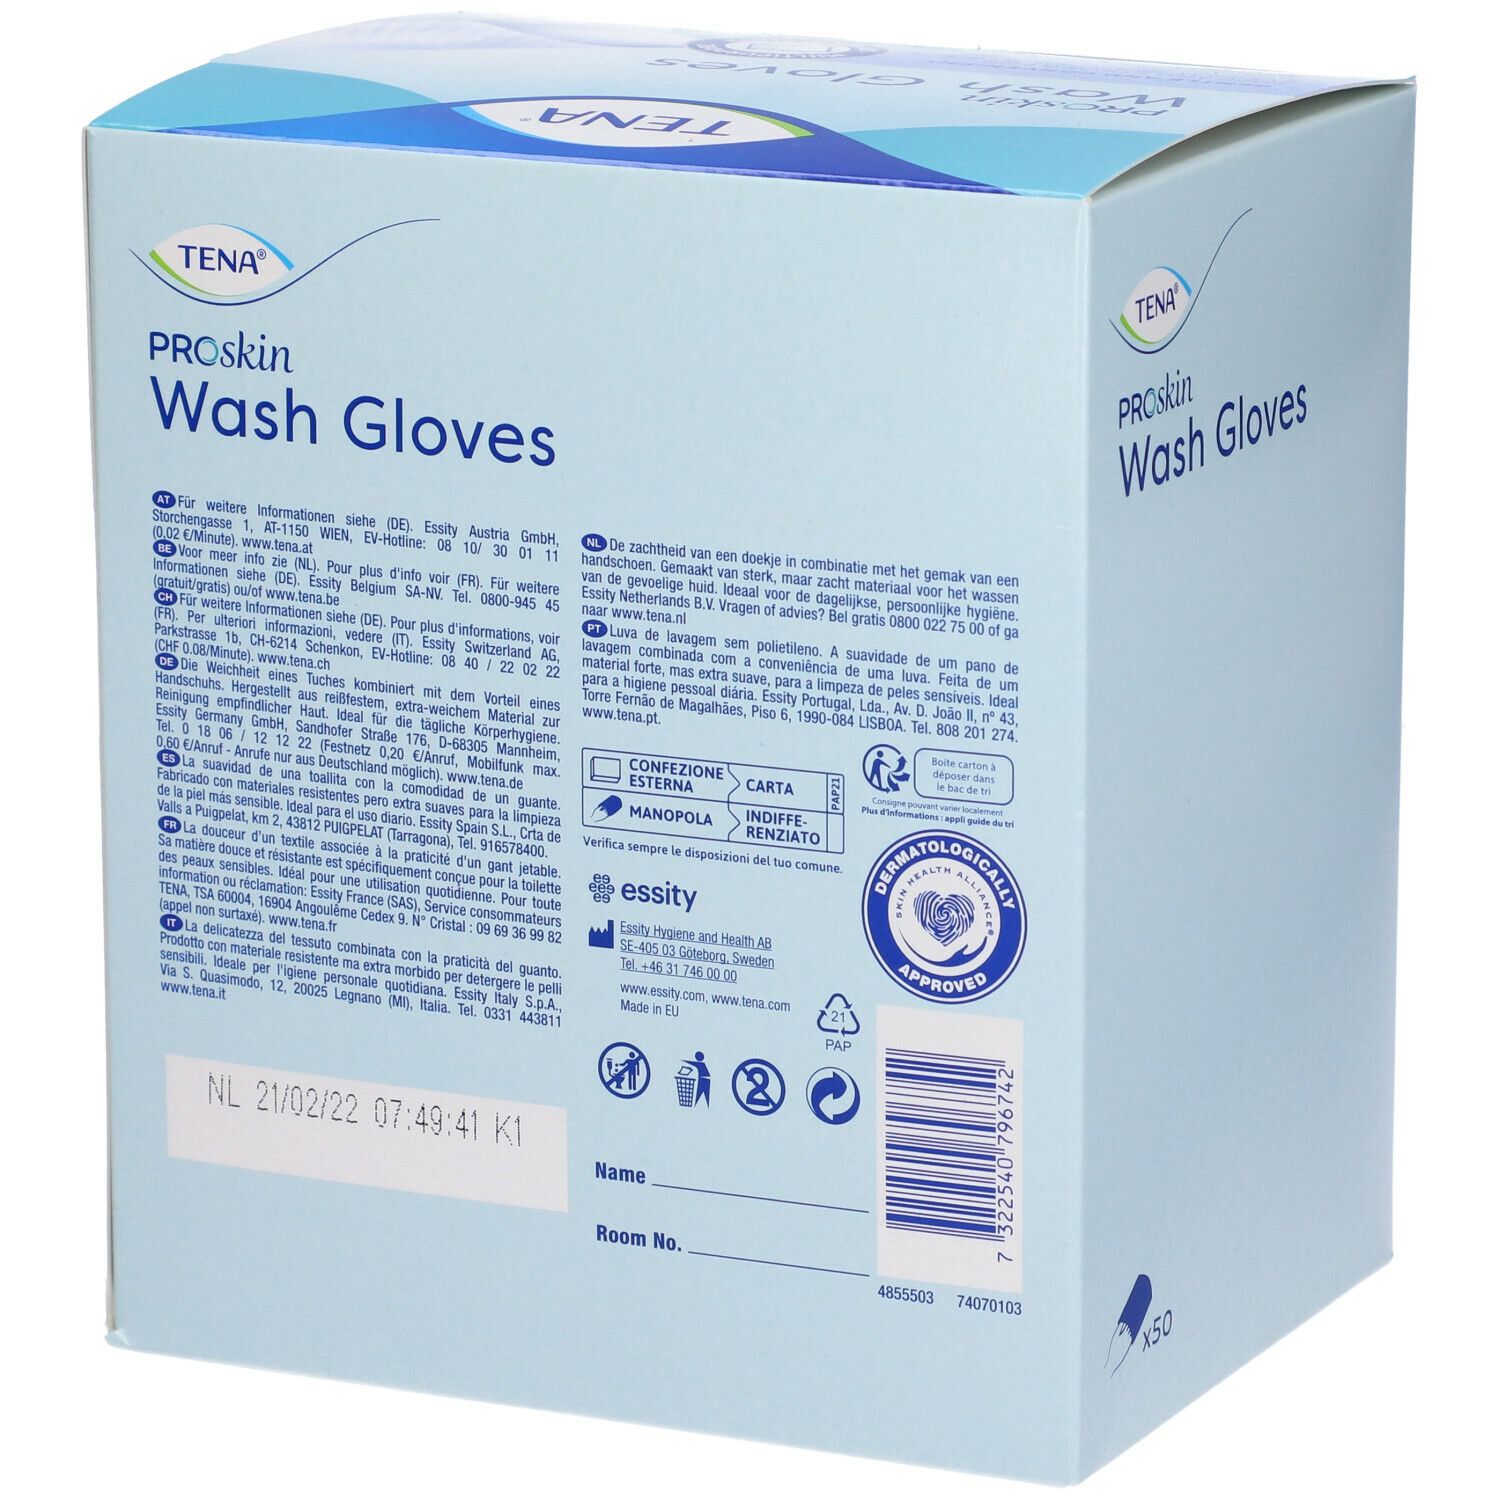 TENA ProSkin Wash Glove